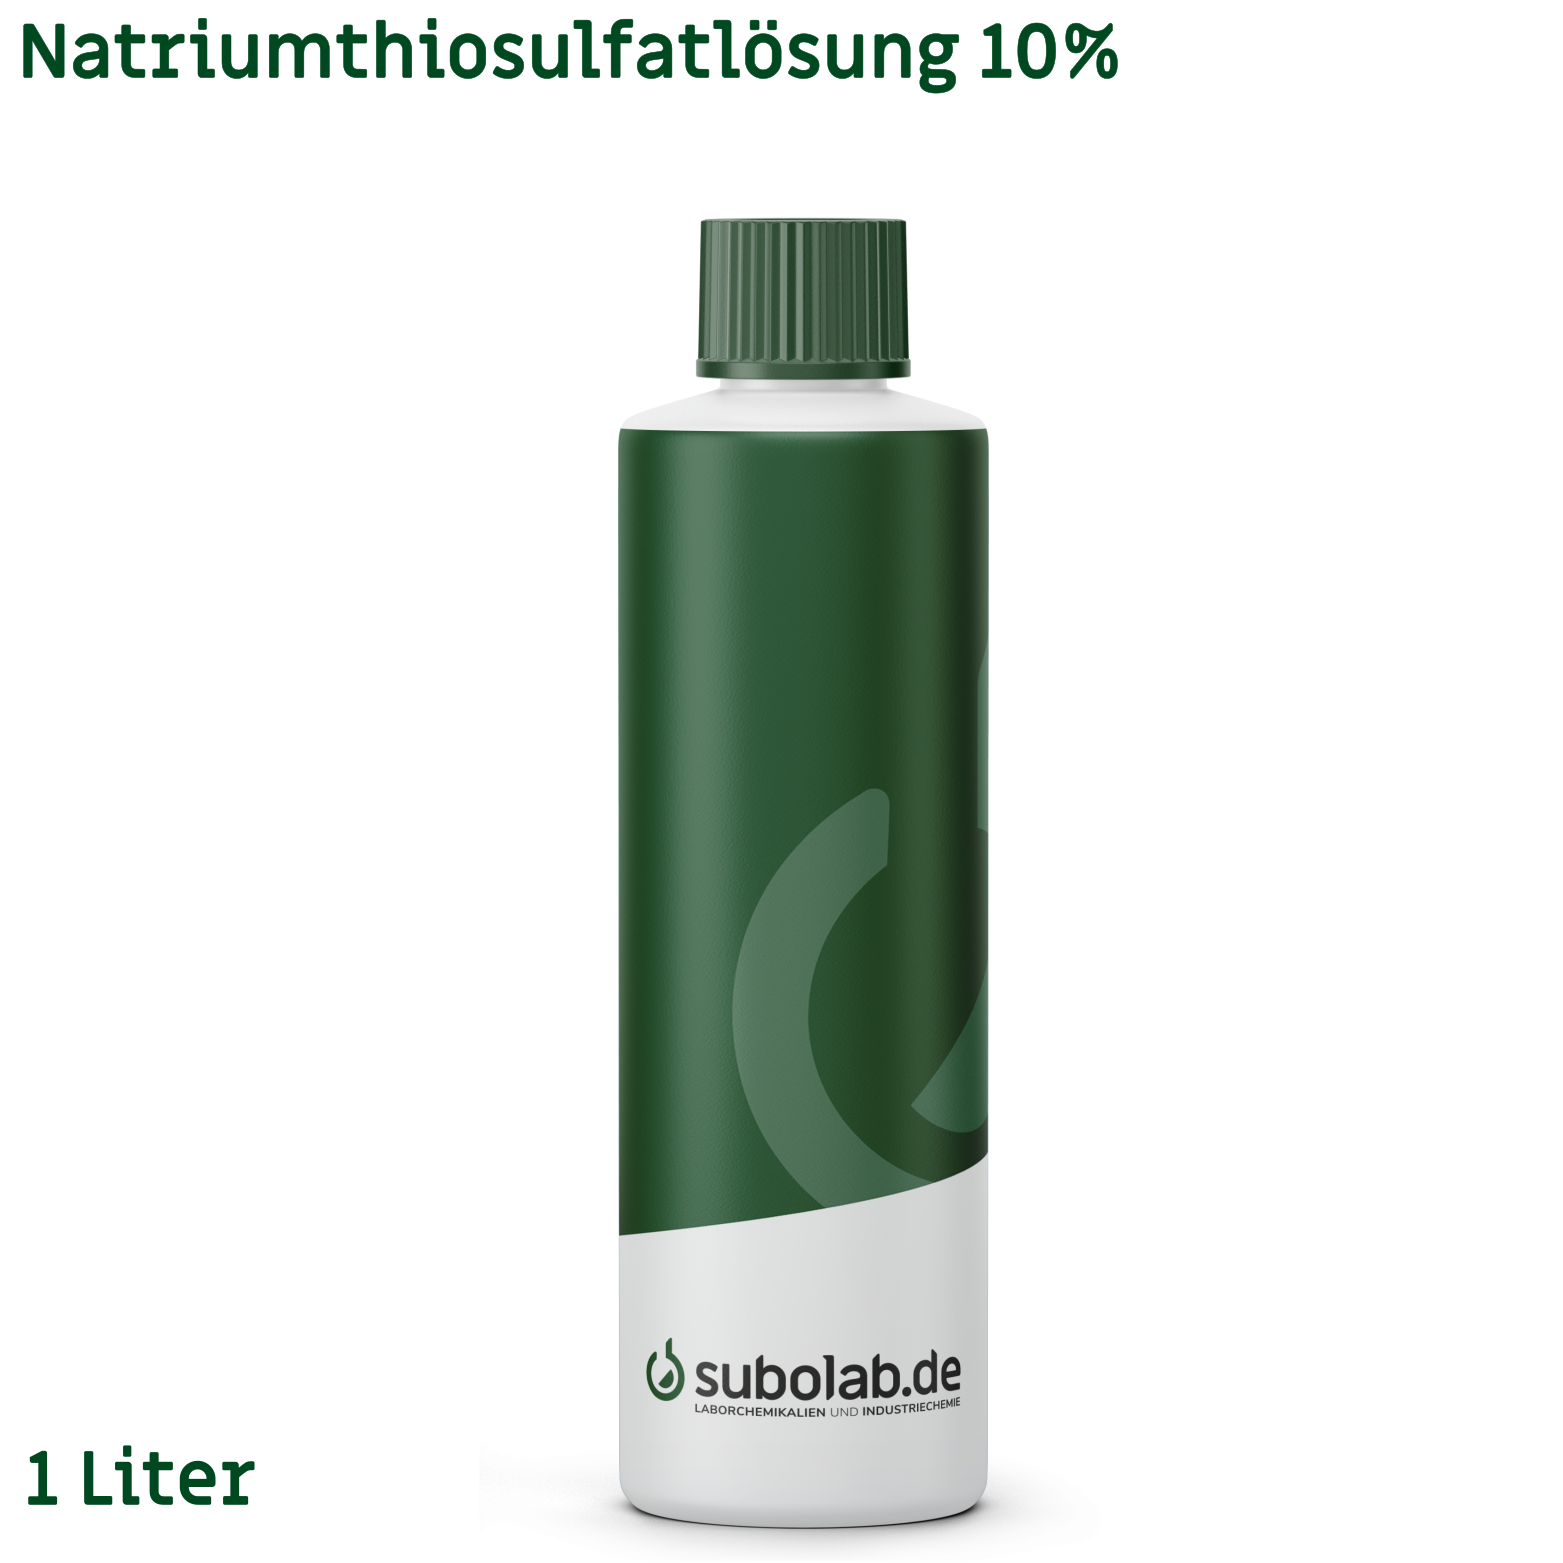 Bild von Natriumthiosulfatlösung 10% (1 Liter)